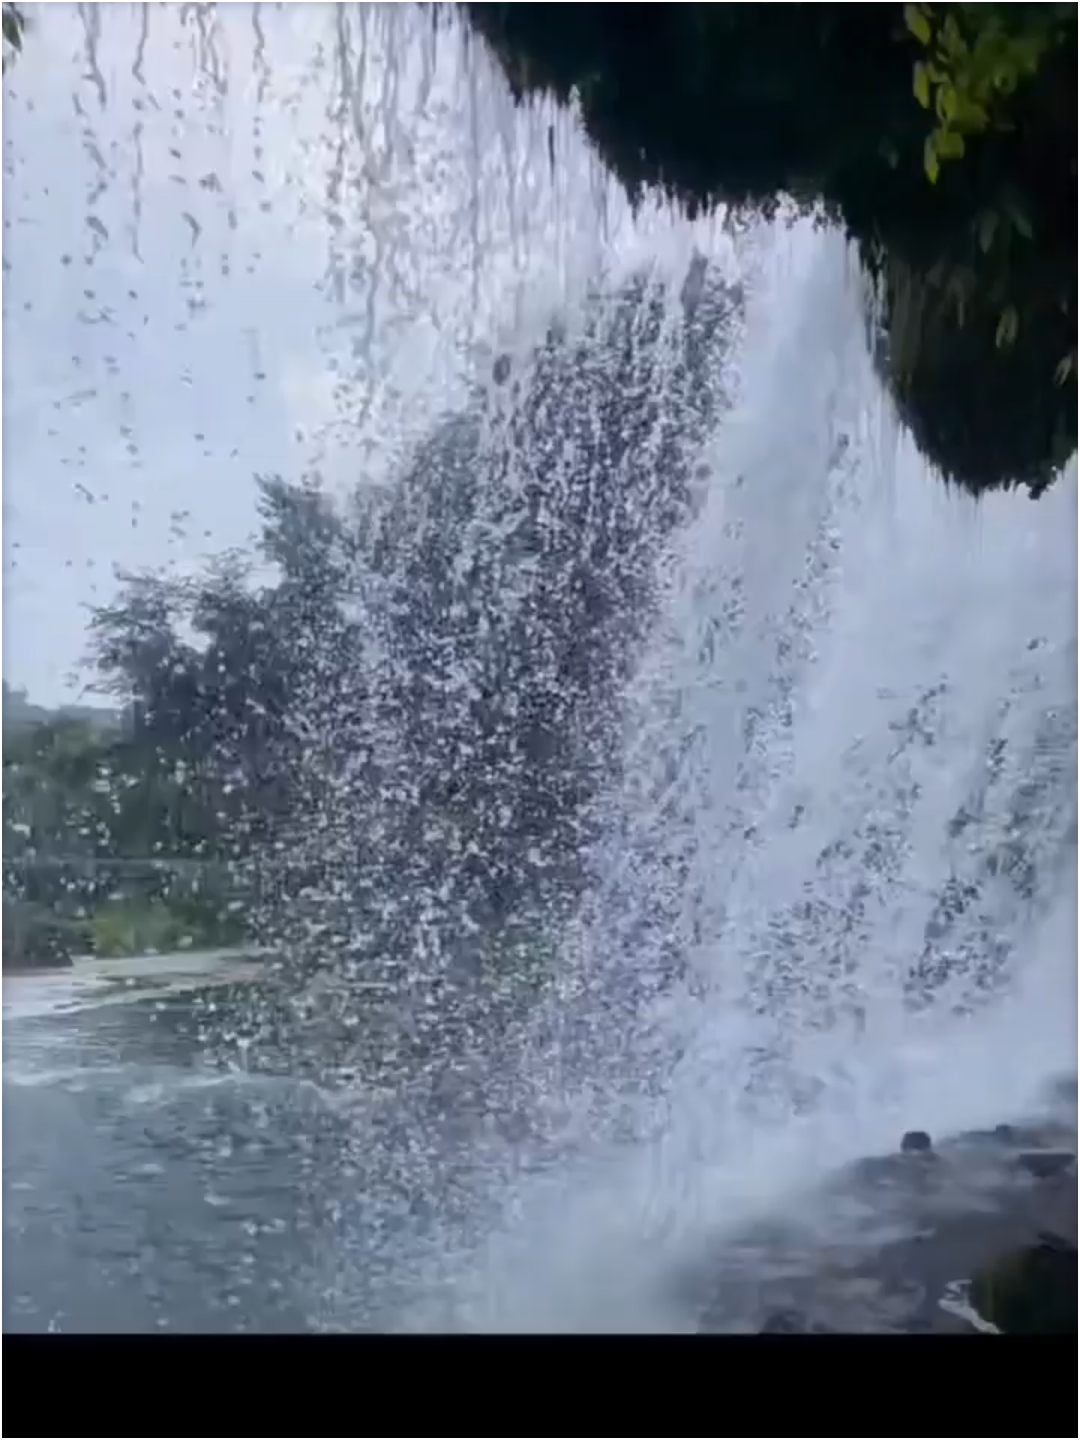 再给大家安利一个免费的贵州小众瀑布:位于黔南州瓮安县的穿洞河瀑布。 穿洞河瀑布水流落差三四米高，宽大